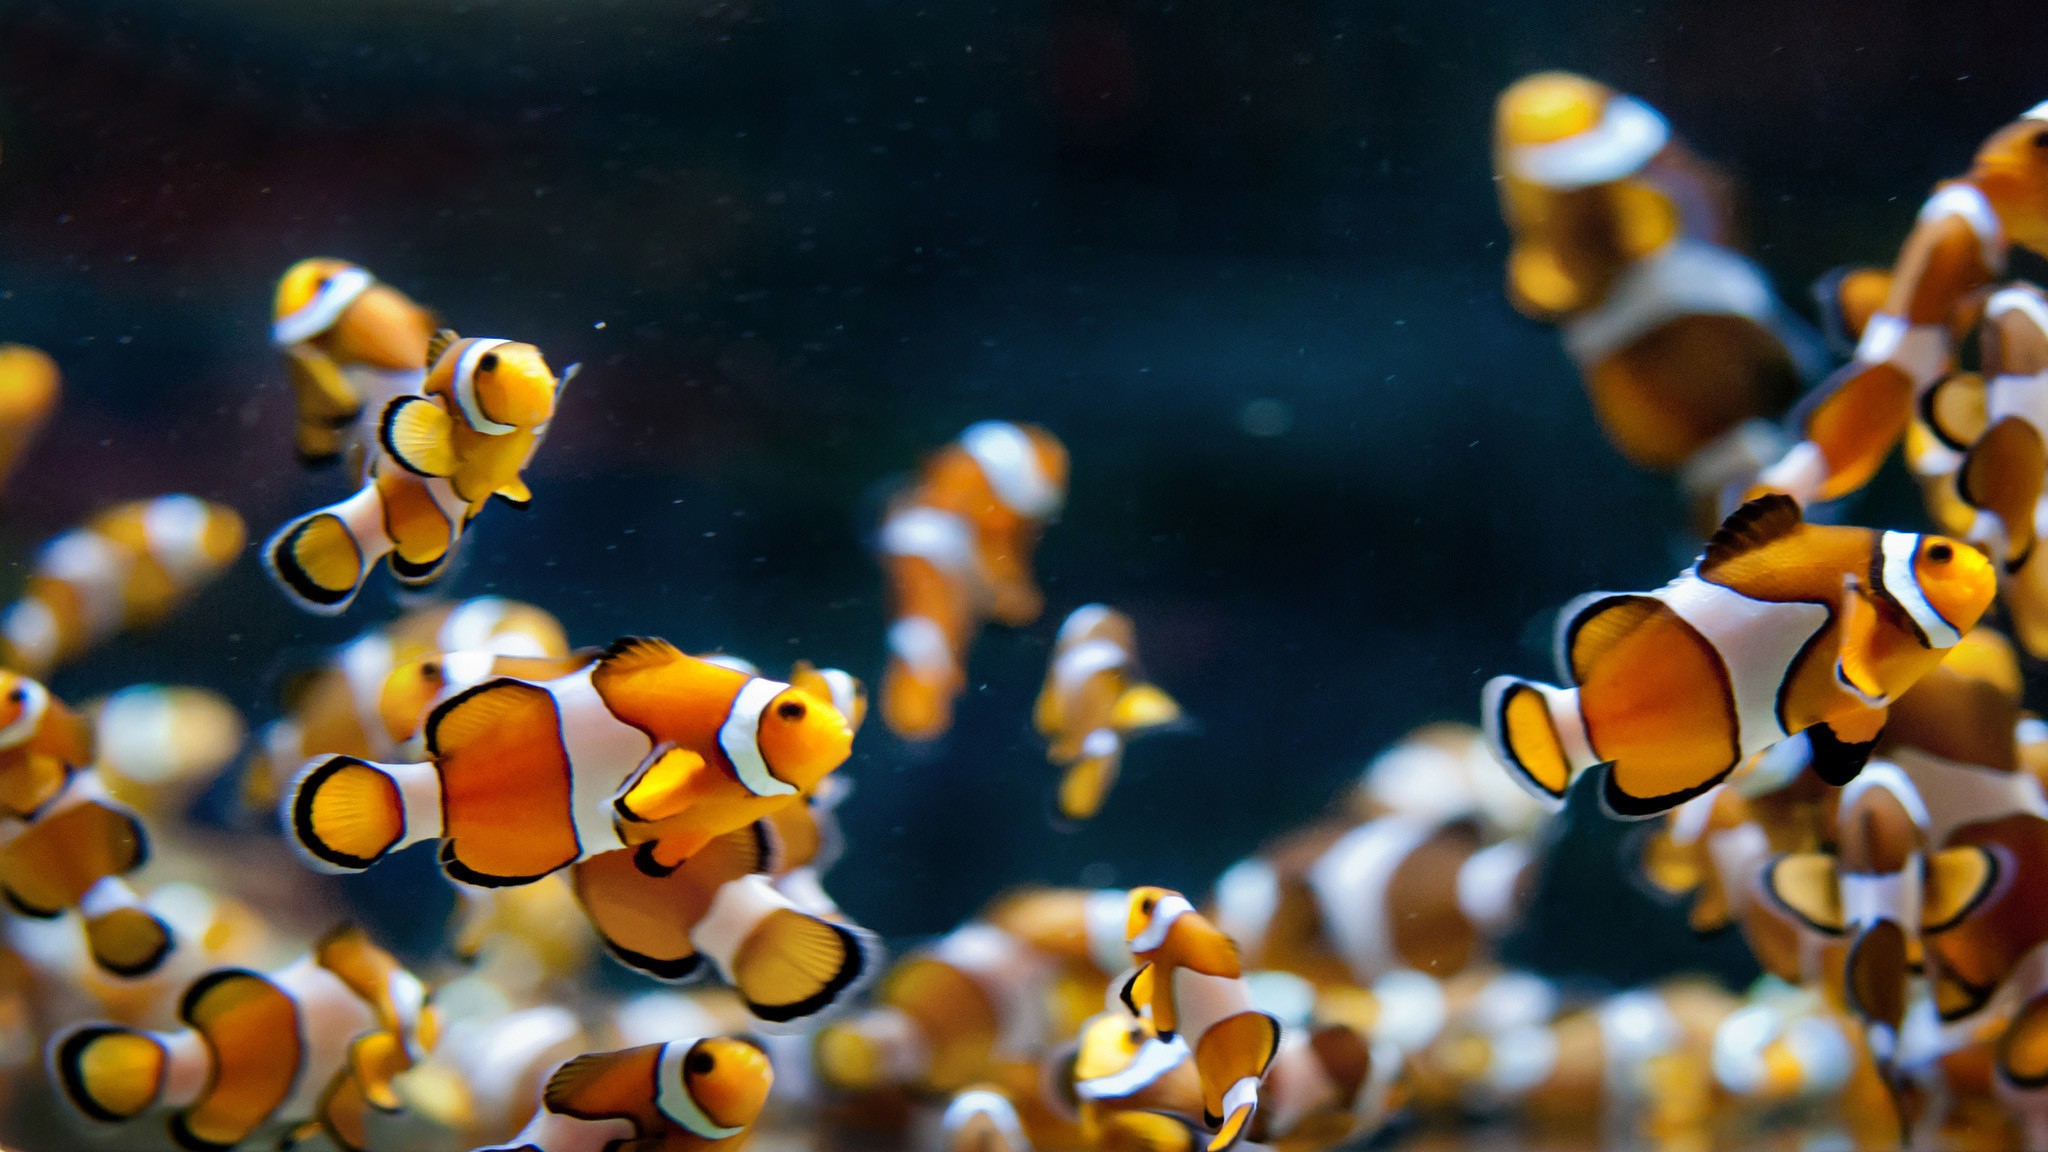 Фото анемоновая рыба биология биология моря - бесплатные картинки на Fonwall